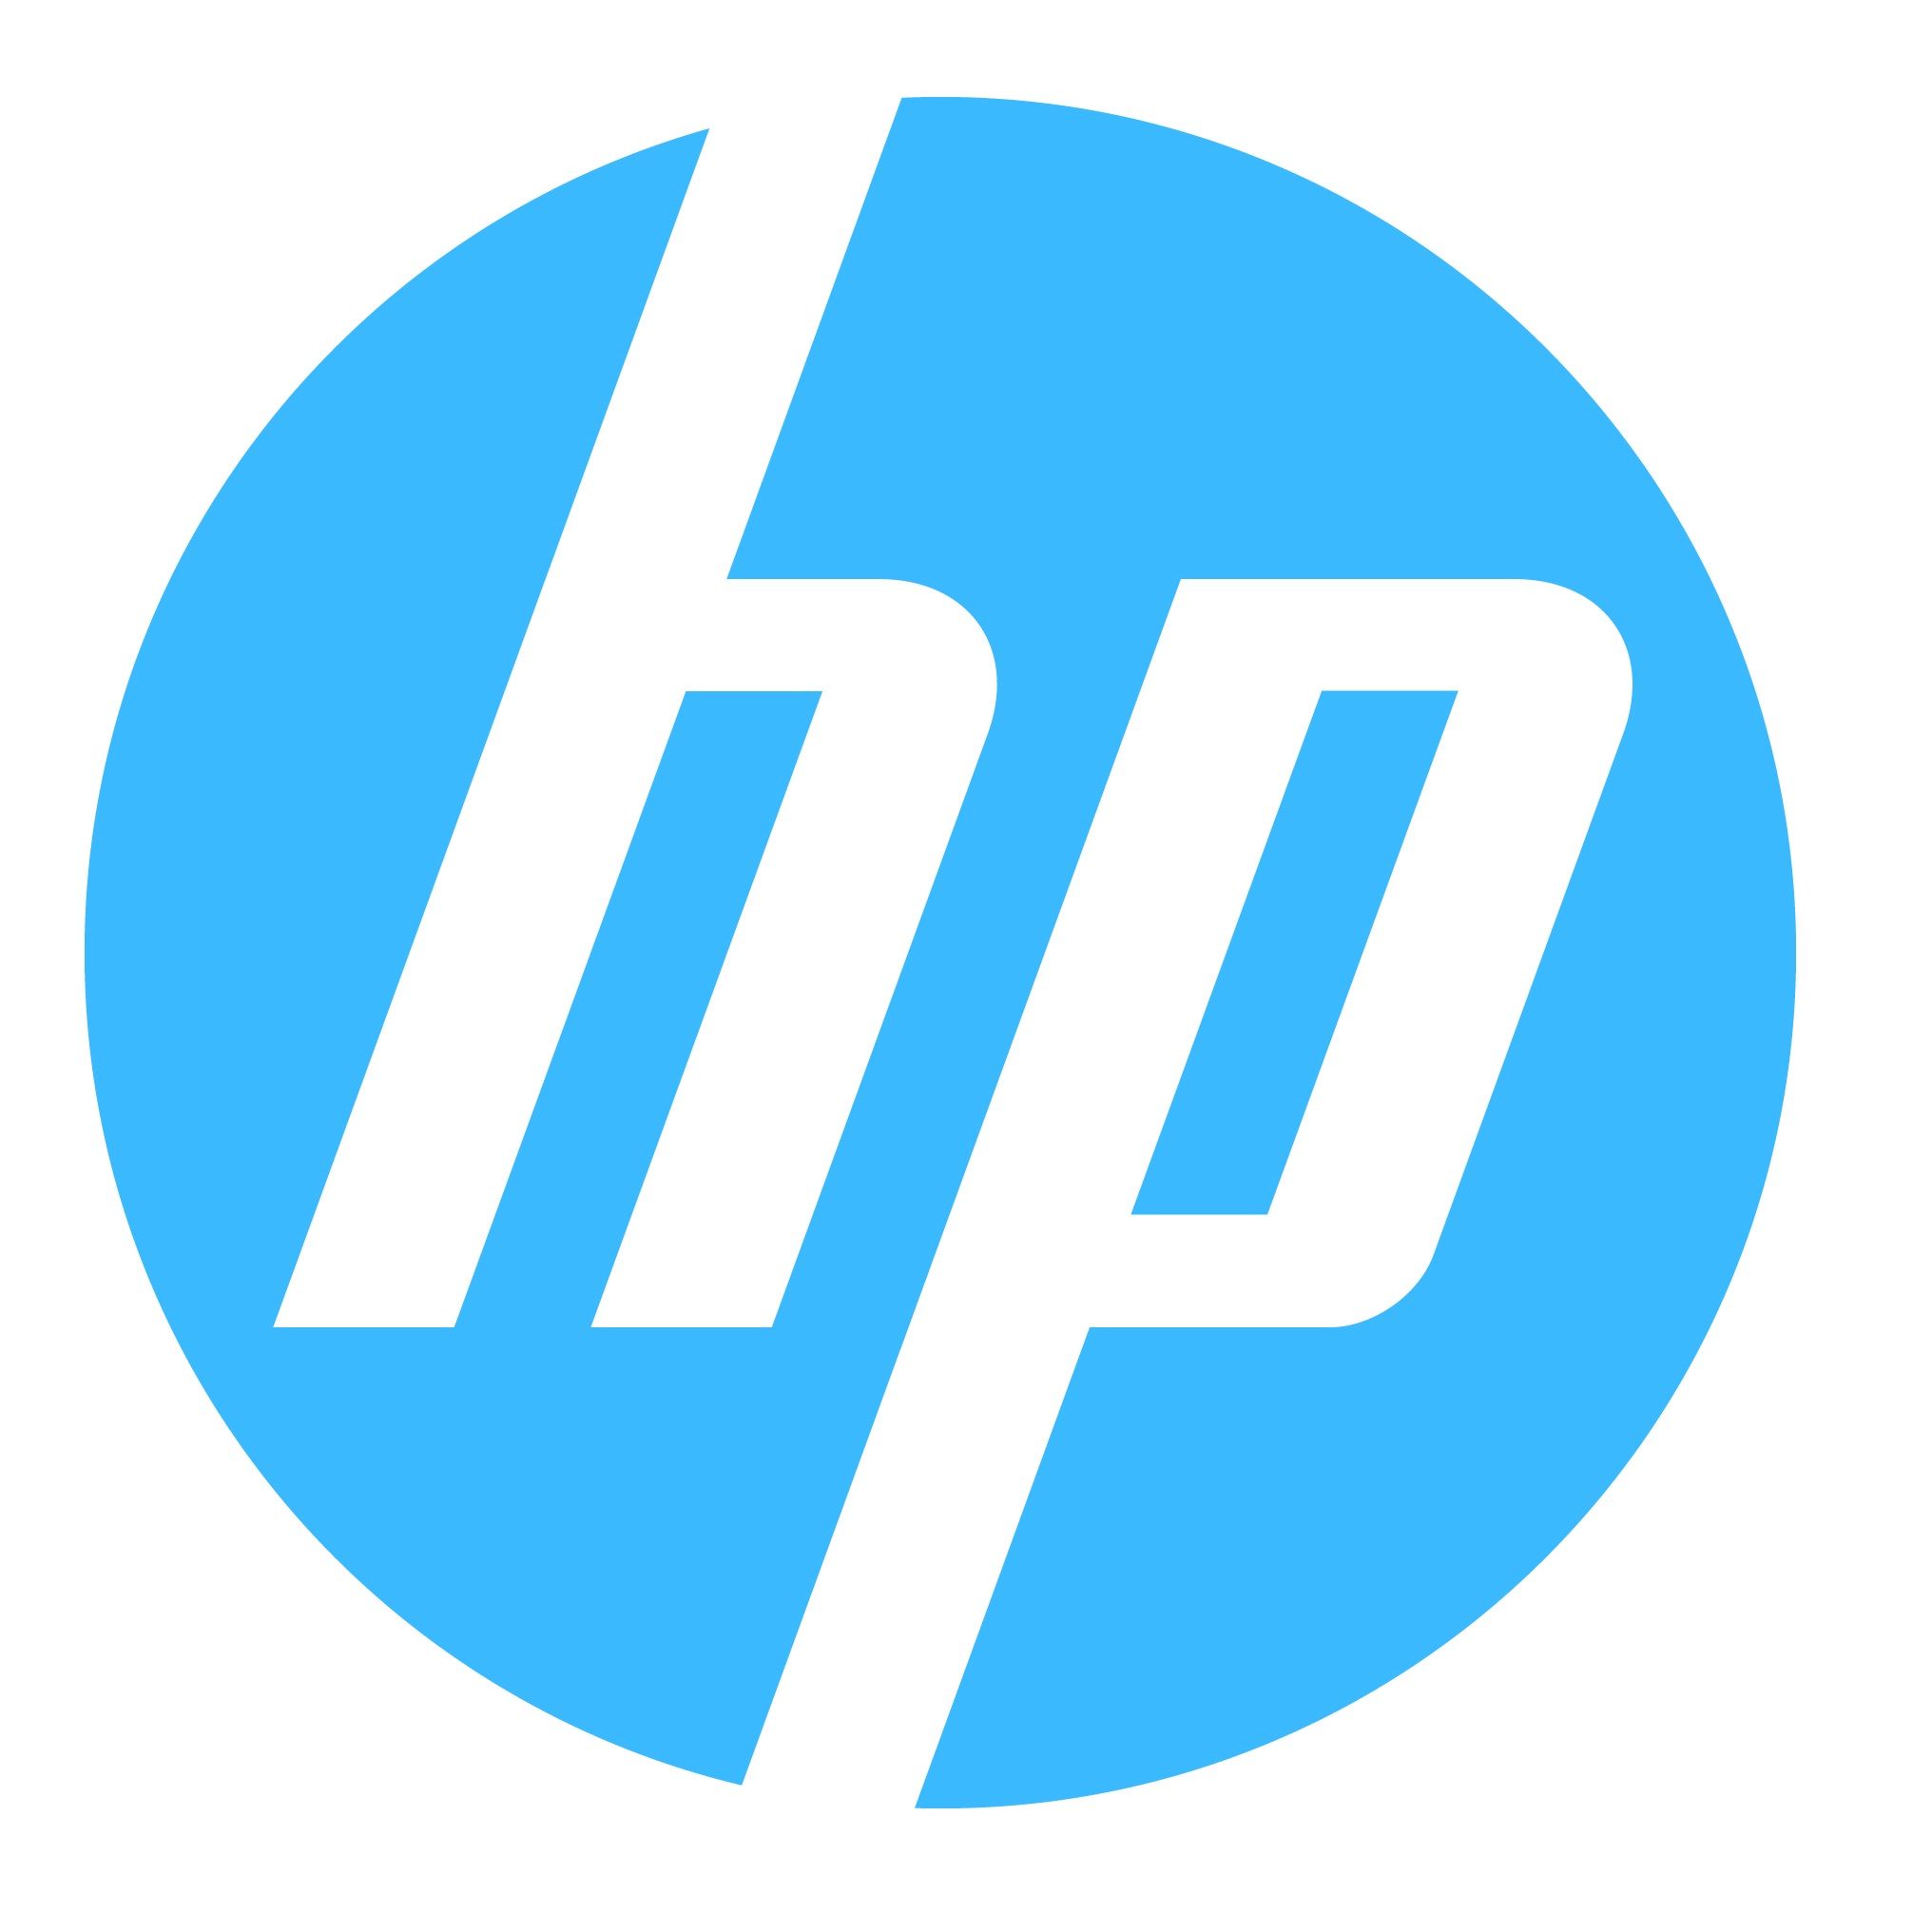 Hewlett Packard Wallpaper, Products, HQ Hewlett Packard PictureK Wallpaper 2019